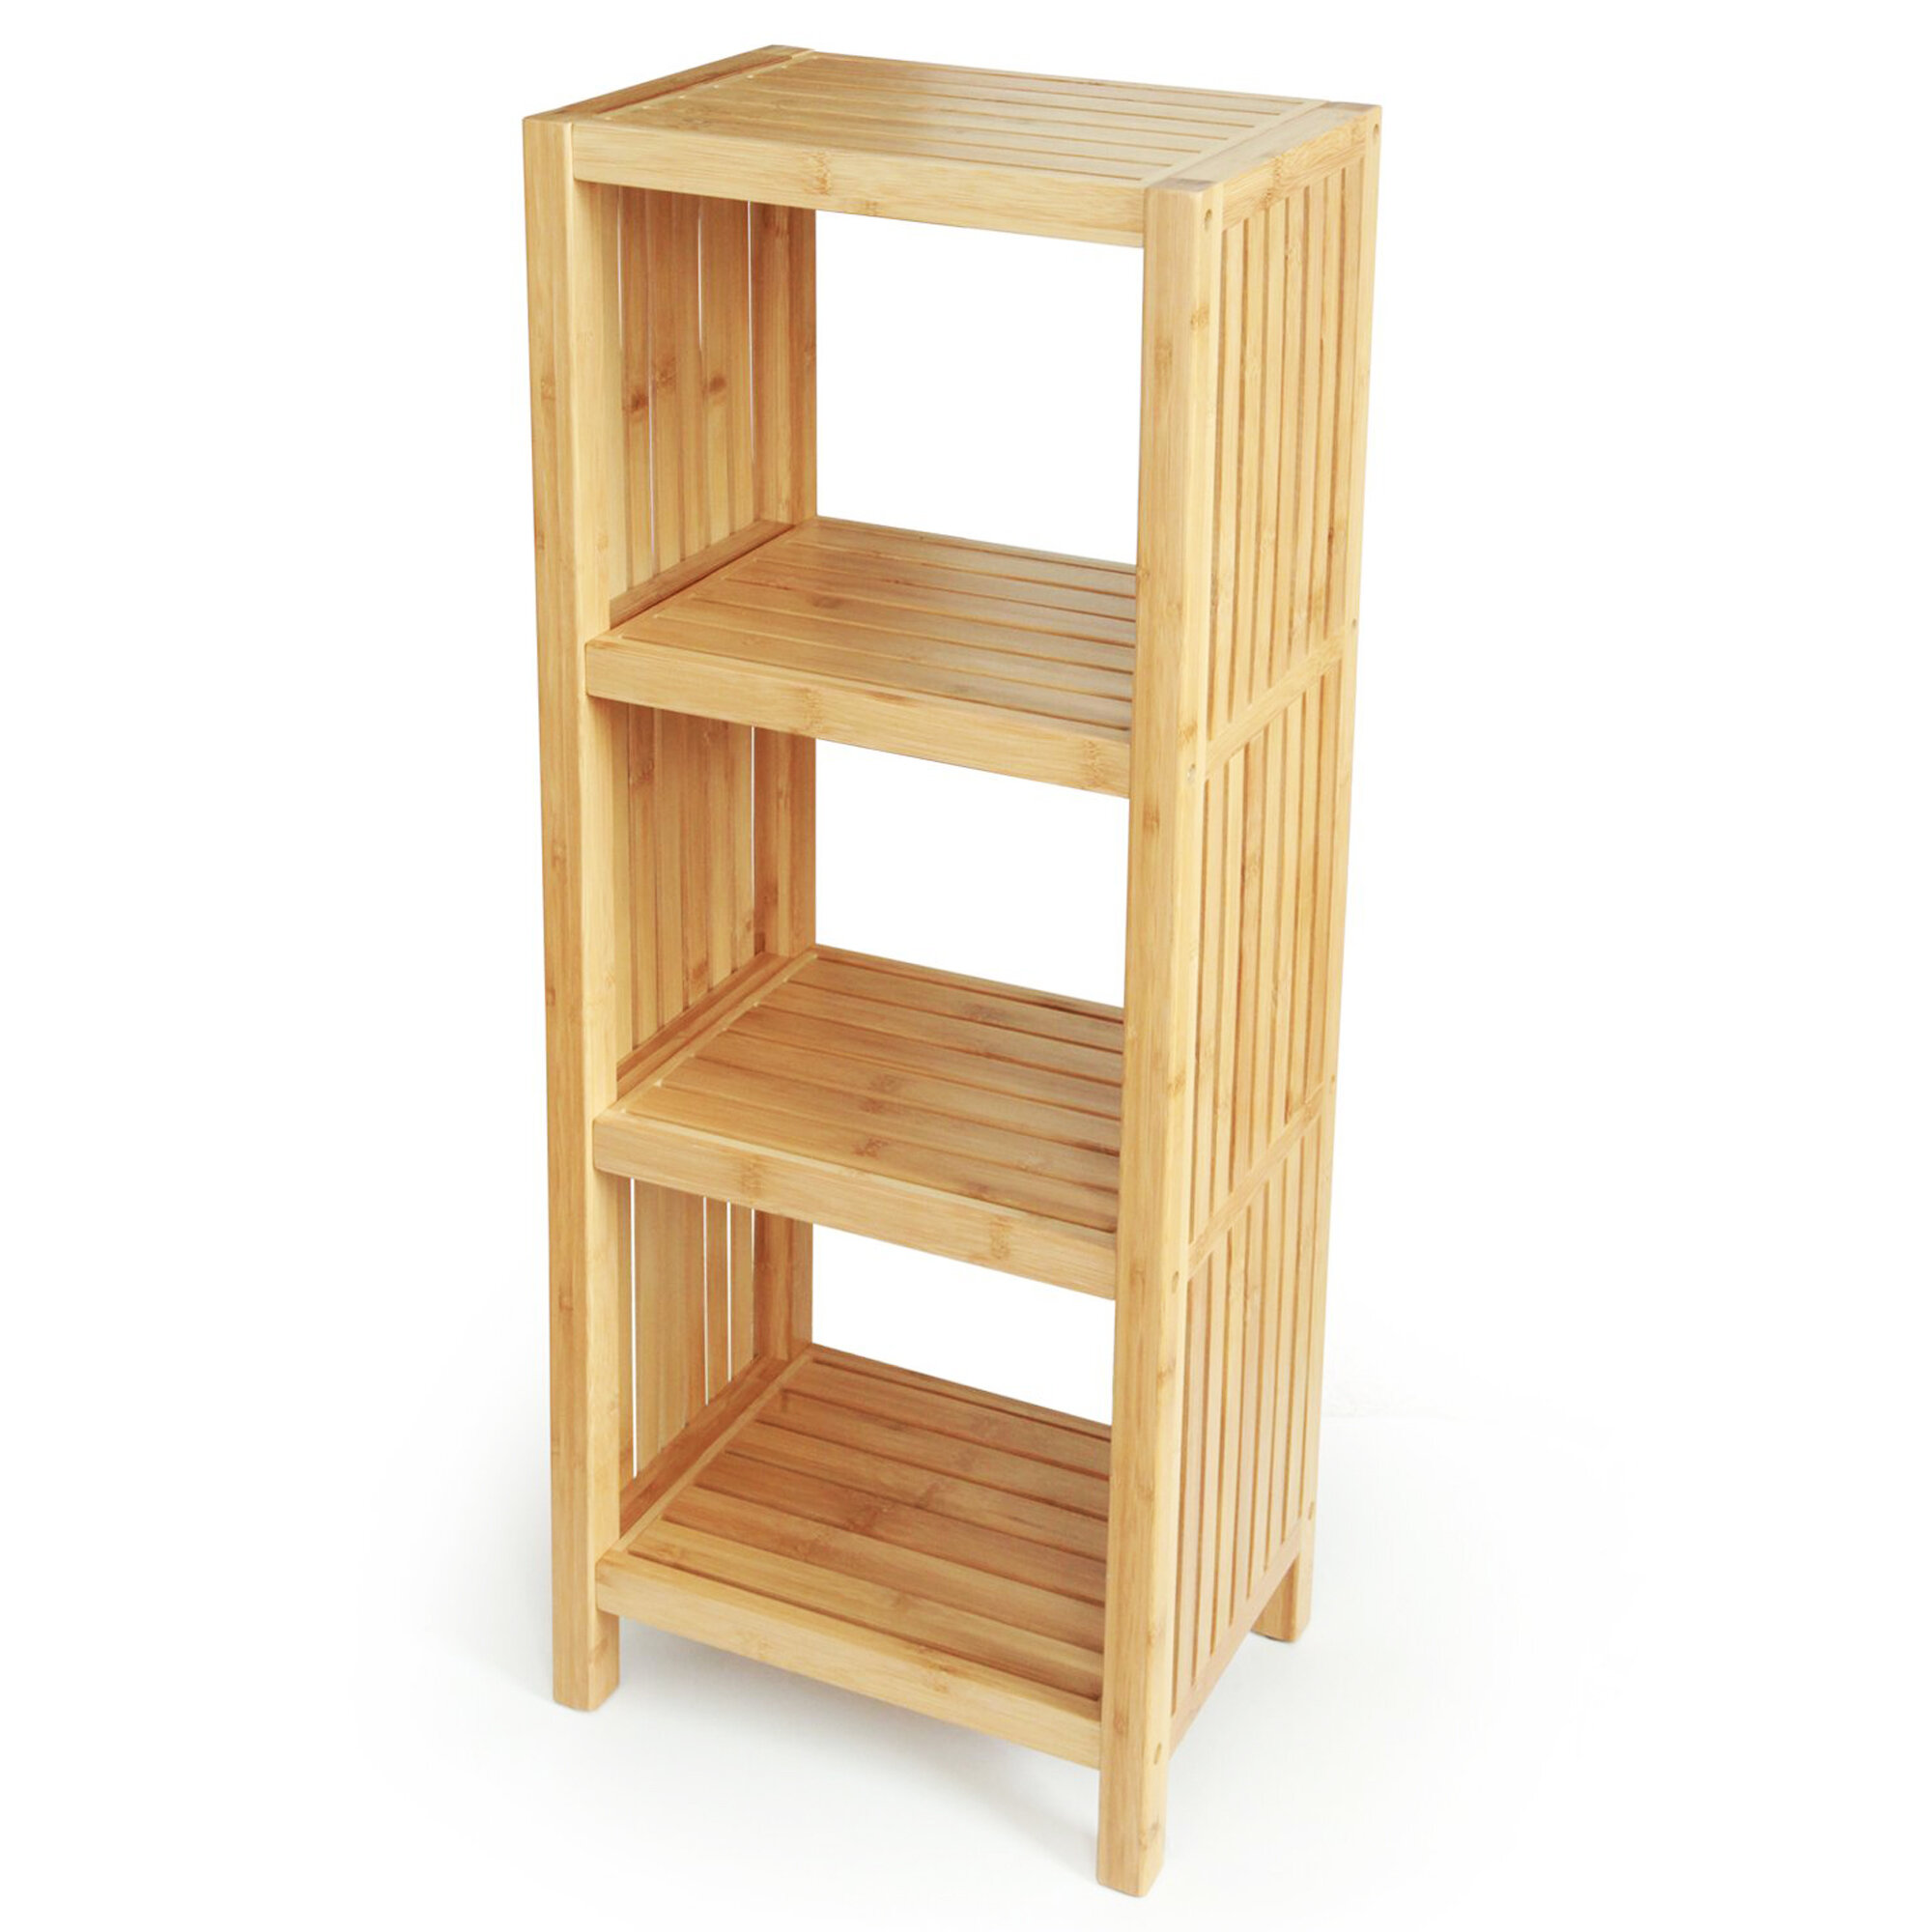 https://assets.wfcdn.com/im/97389036/compr-r85/1110/111003006/jenelle-solid-wood-freestanding-bathroom-shelves.jpg